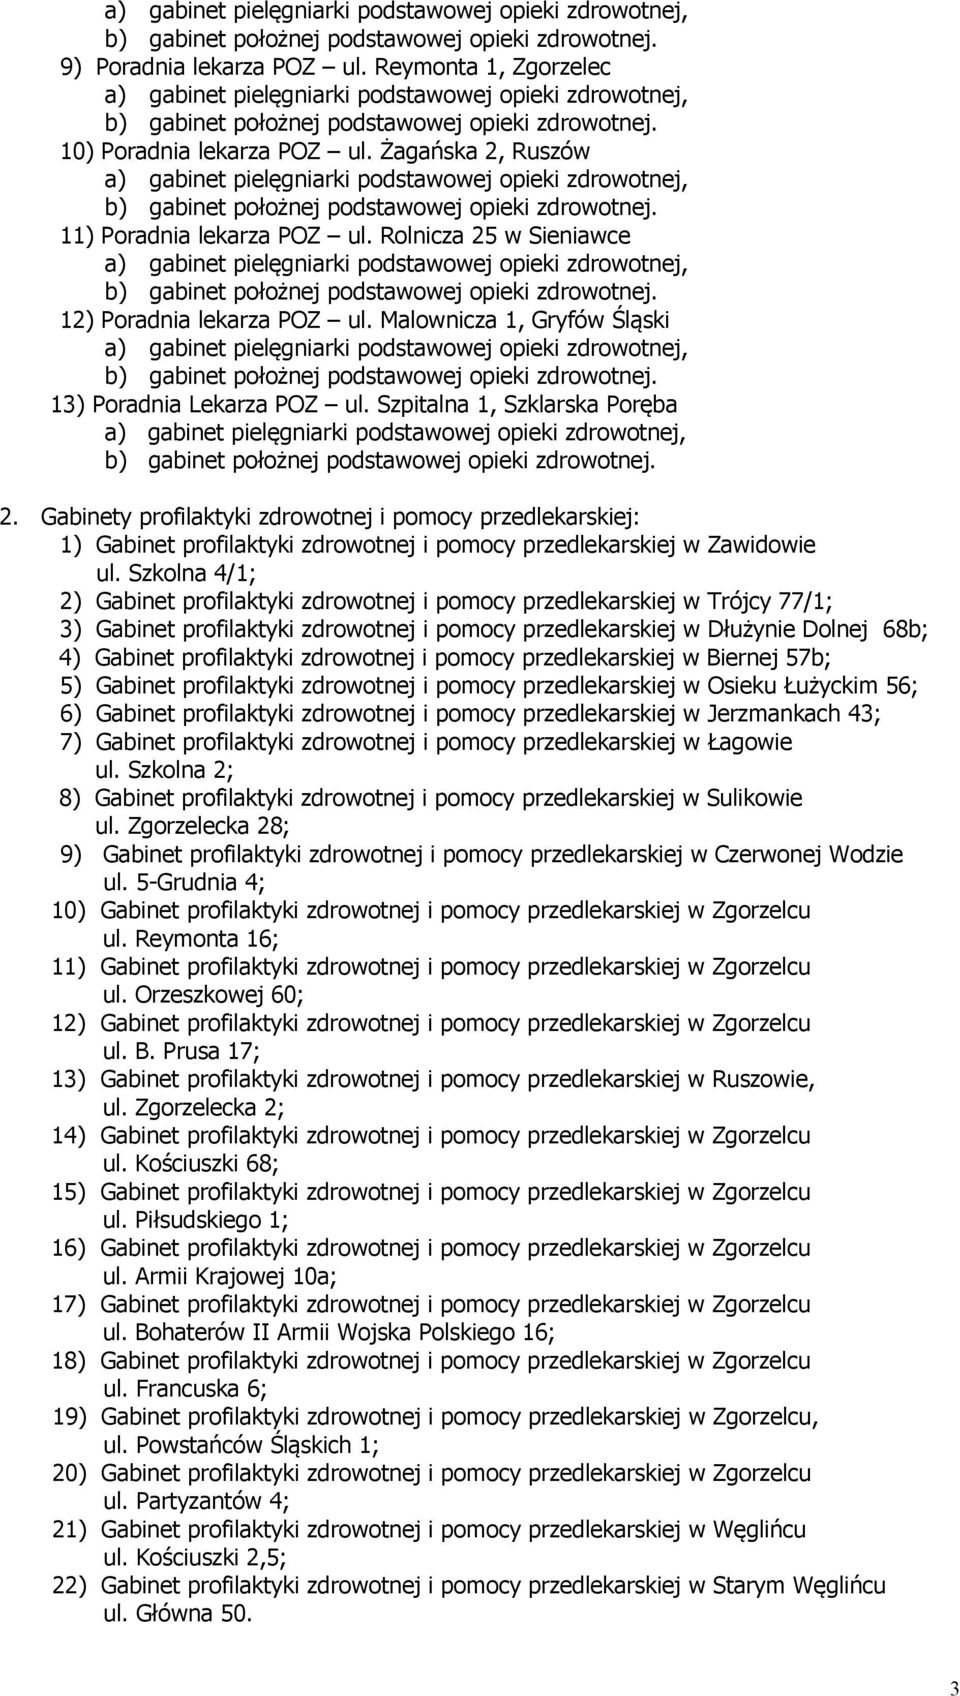 Gabinety profilaktyki zdrowotnej i pomocy przedlekarskiej: 1) Gabinet profilaktyki zdrowotnej i pomocy przedlekarskiej w Zawidowie ul.